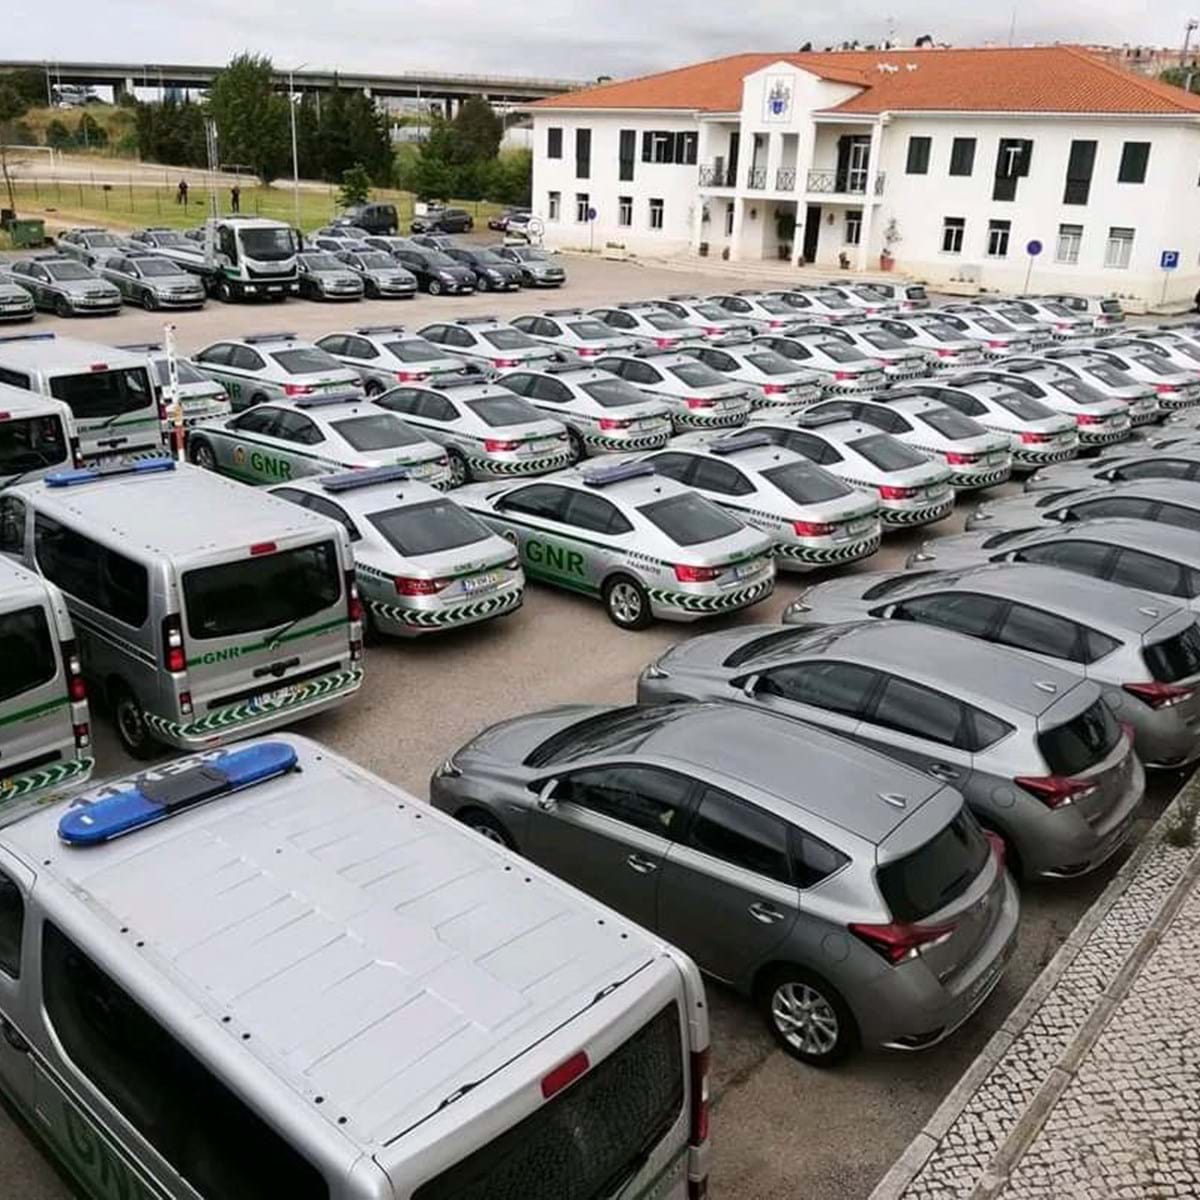 Sintra investe em 12 carros-patrulha para a PSP e GNR - Sintra